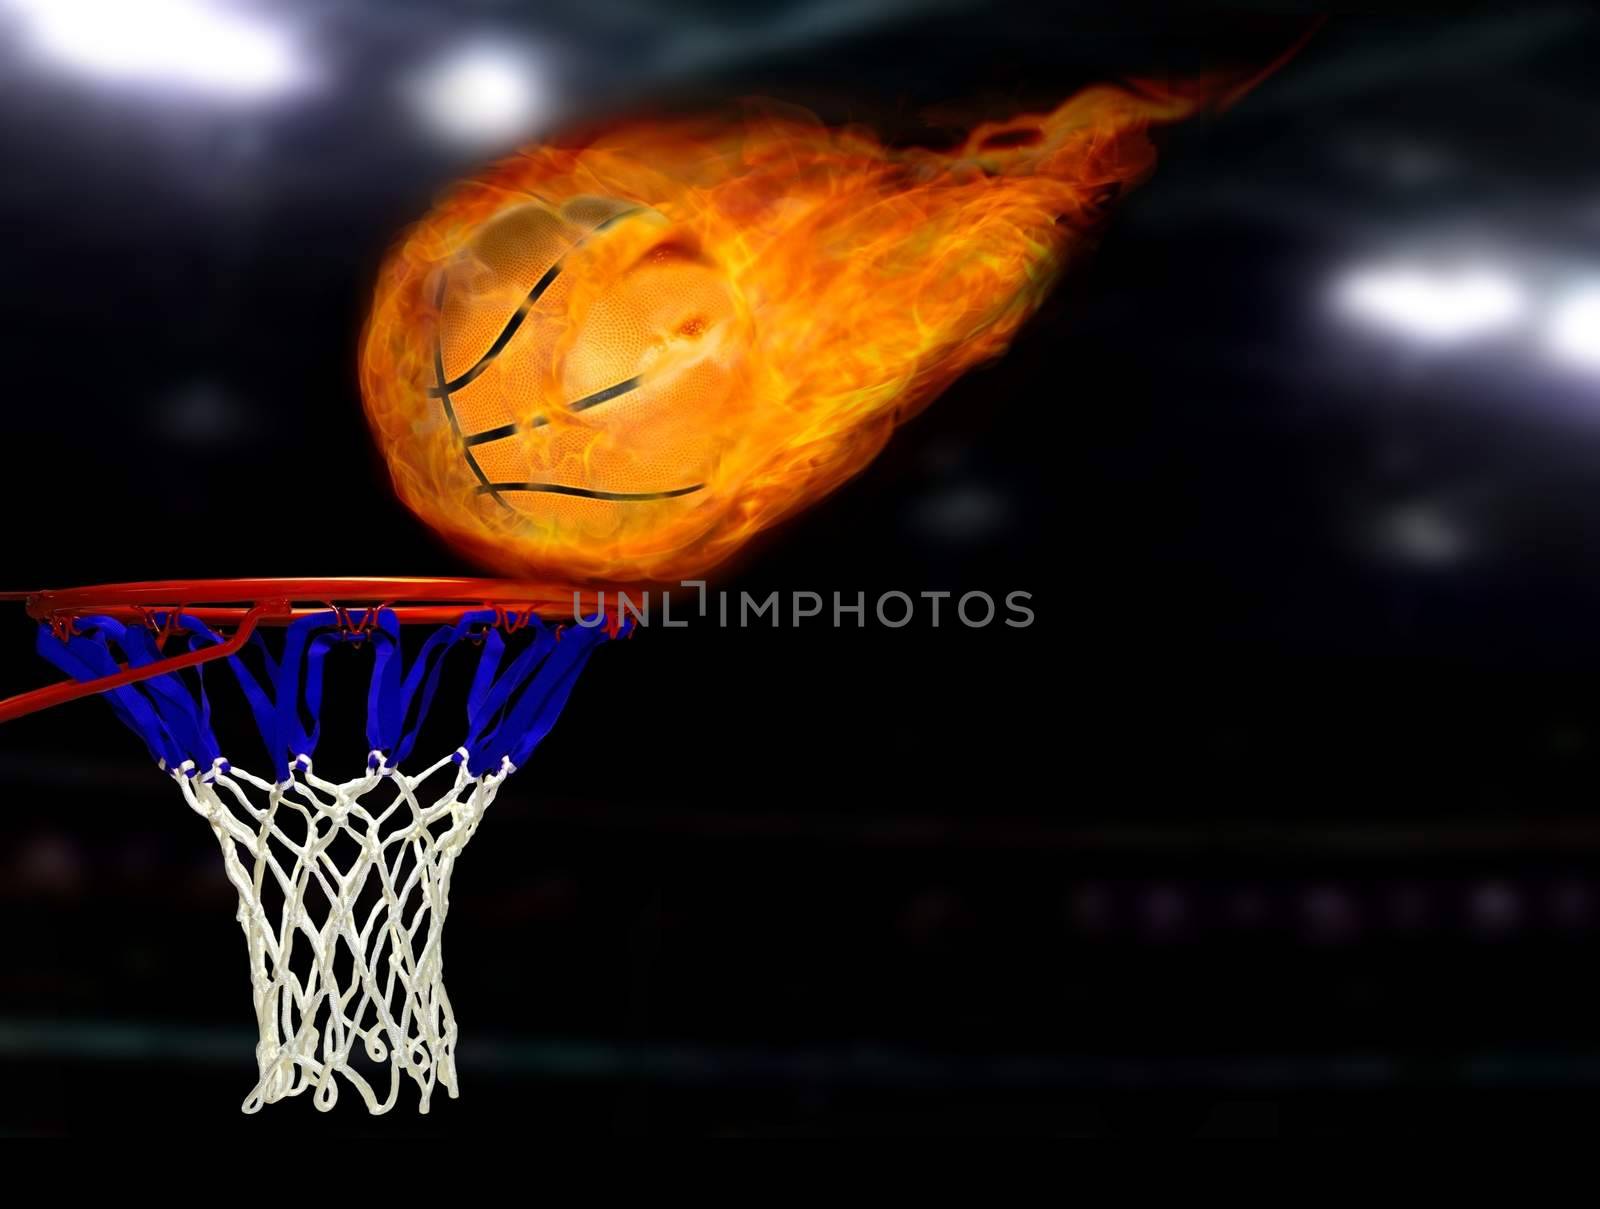 Basketball shoot on fire







Basketball shoot on fire